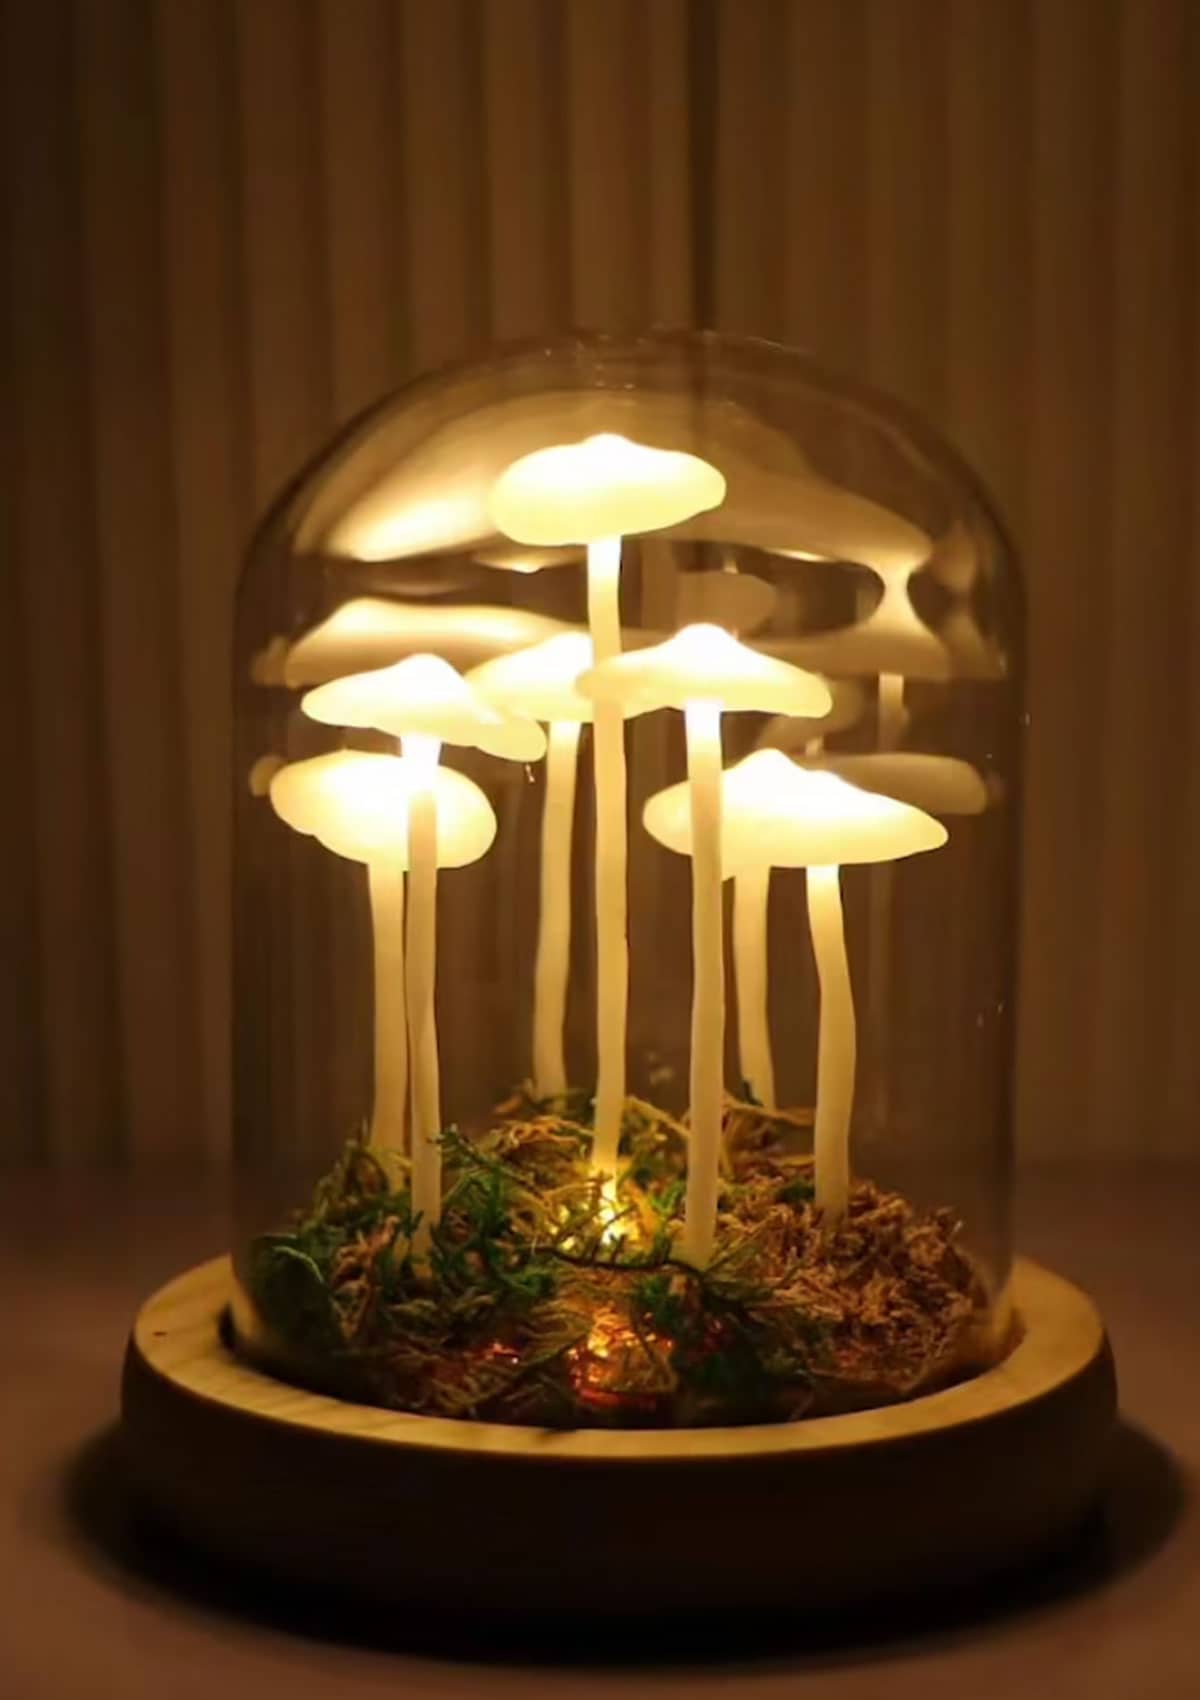 DIY mushroom decor room decor ideas for a whimsical touch